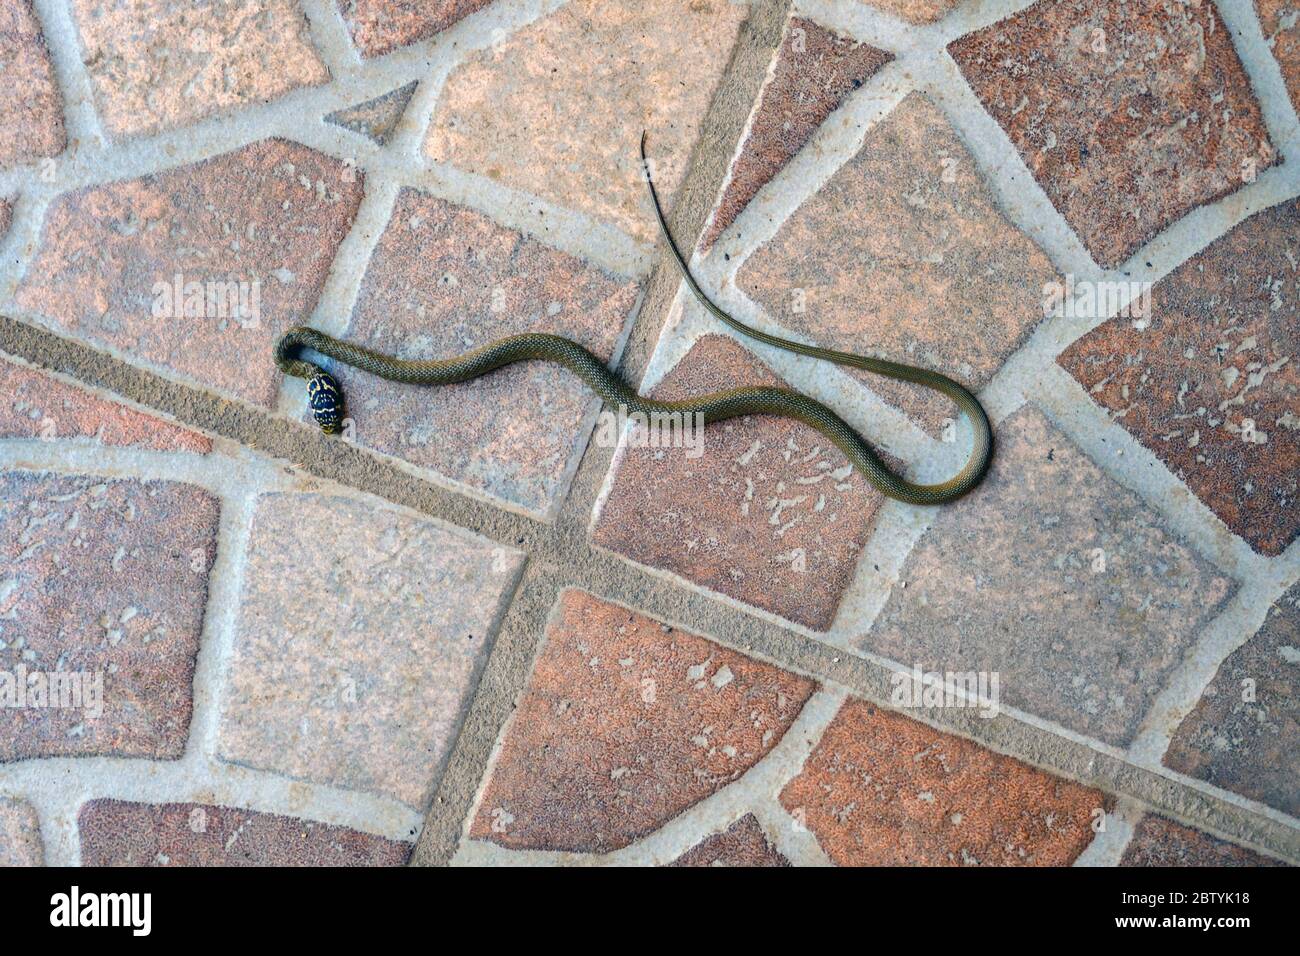 Fouet de serpent occidental juvénile sur le sol carrelé, Ariège, Pyrénées françaises, Pyrénées, France Banque D'Images